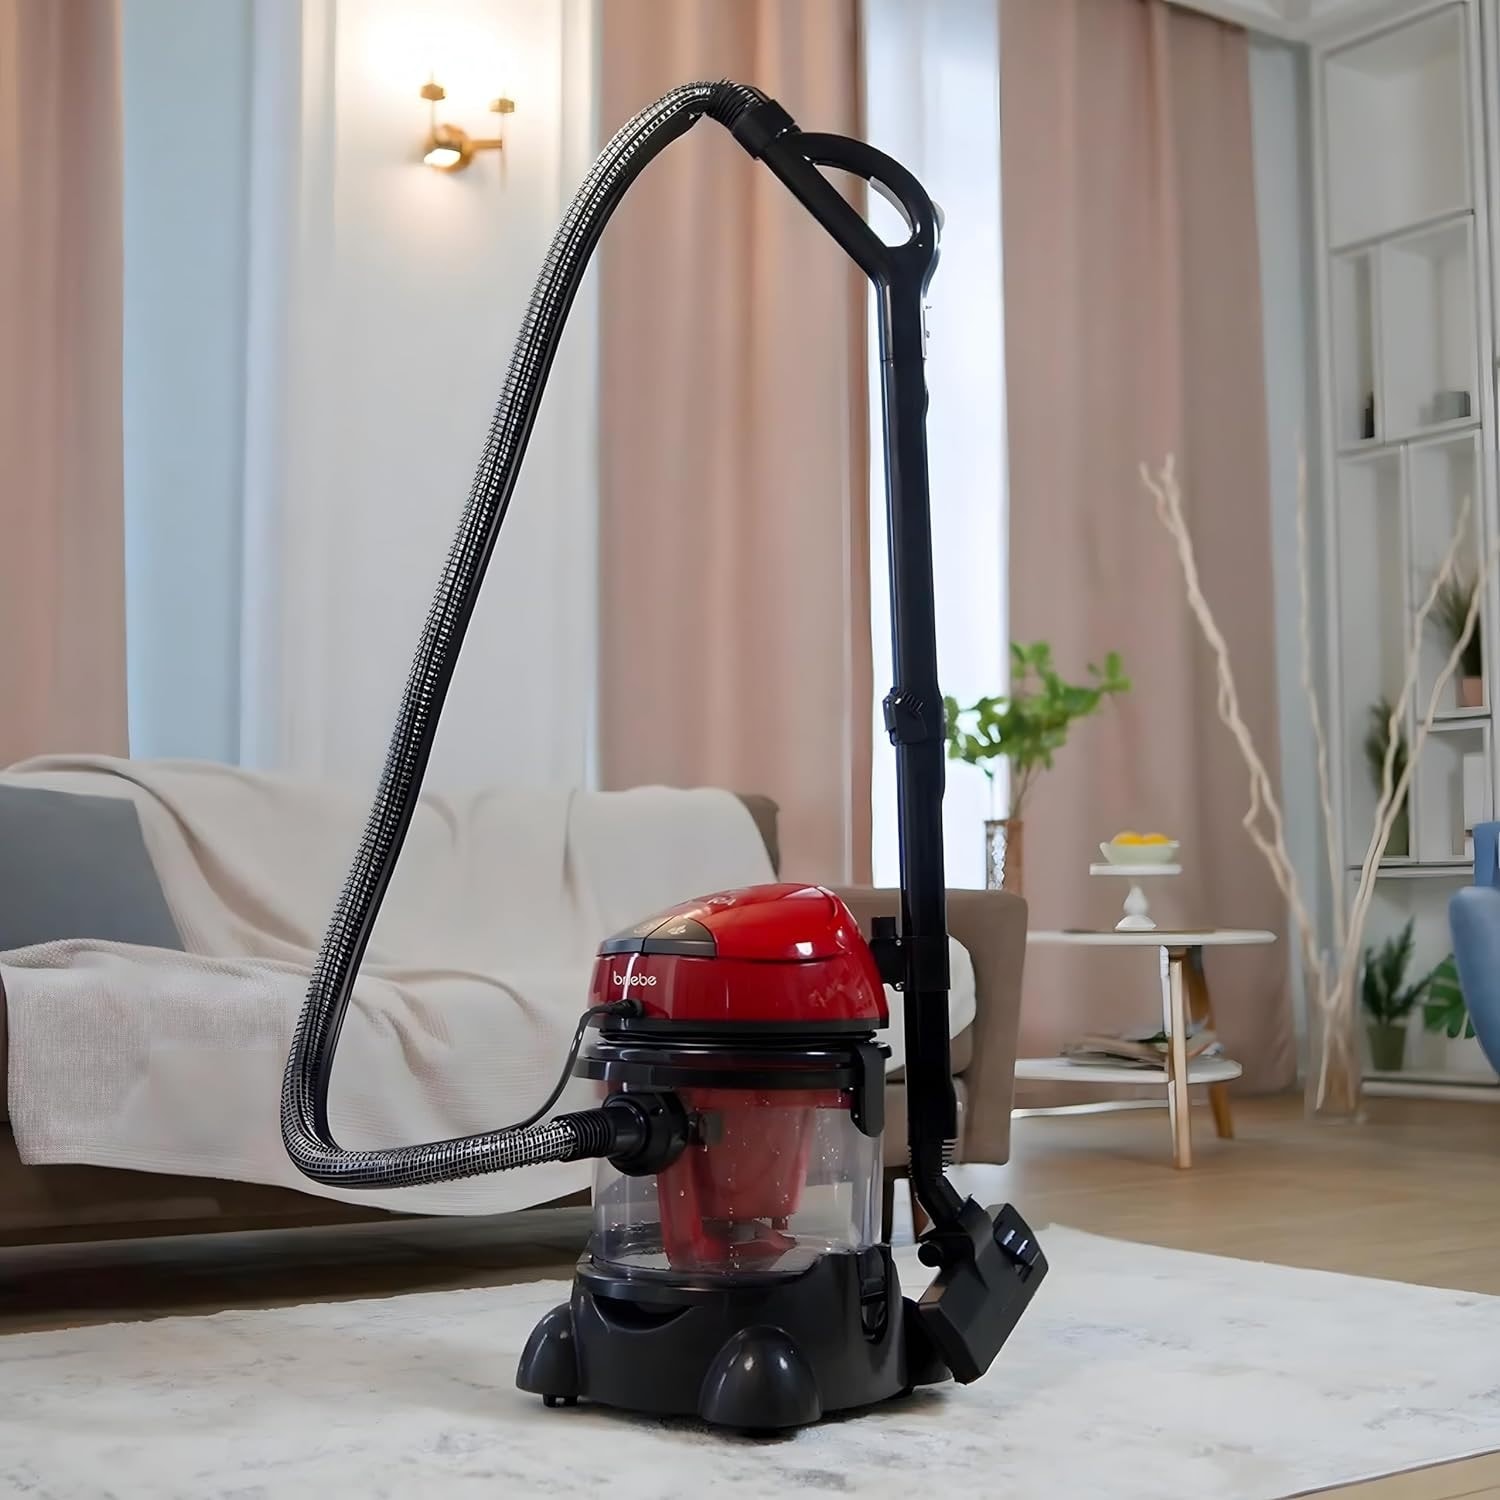 Éponge de nettoyage puissante pour une maison sans poussière